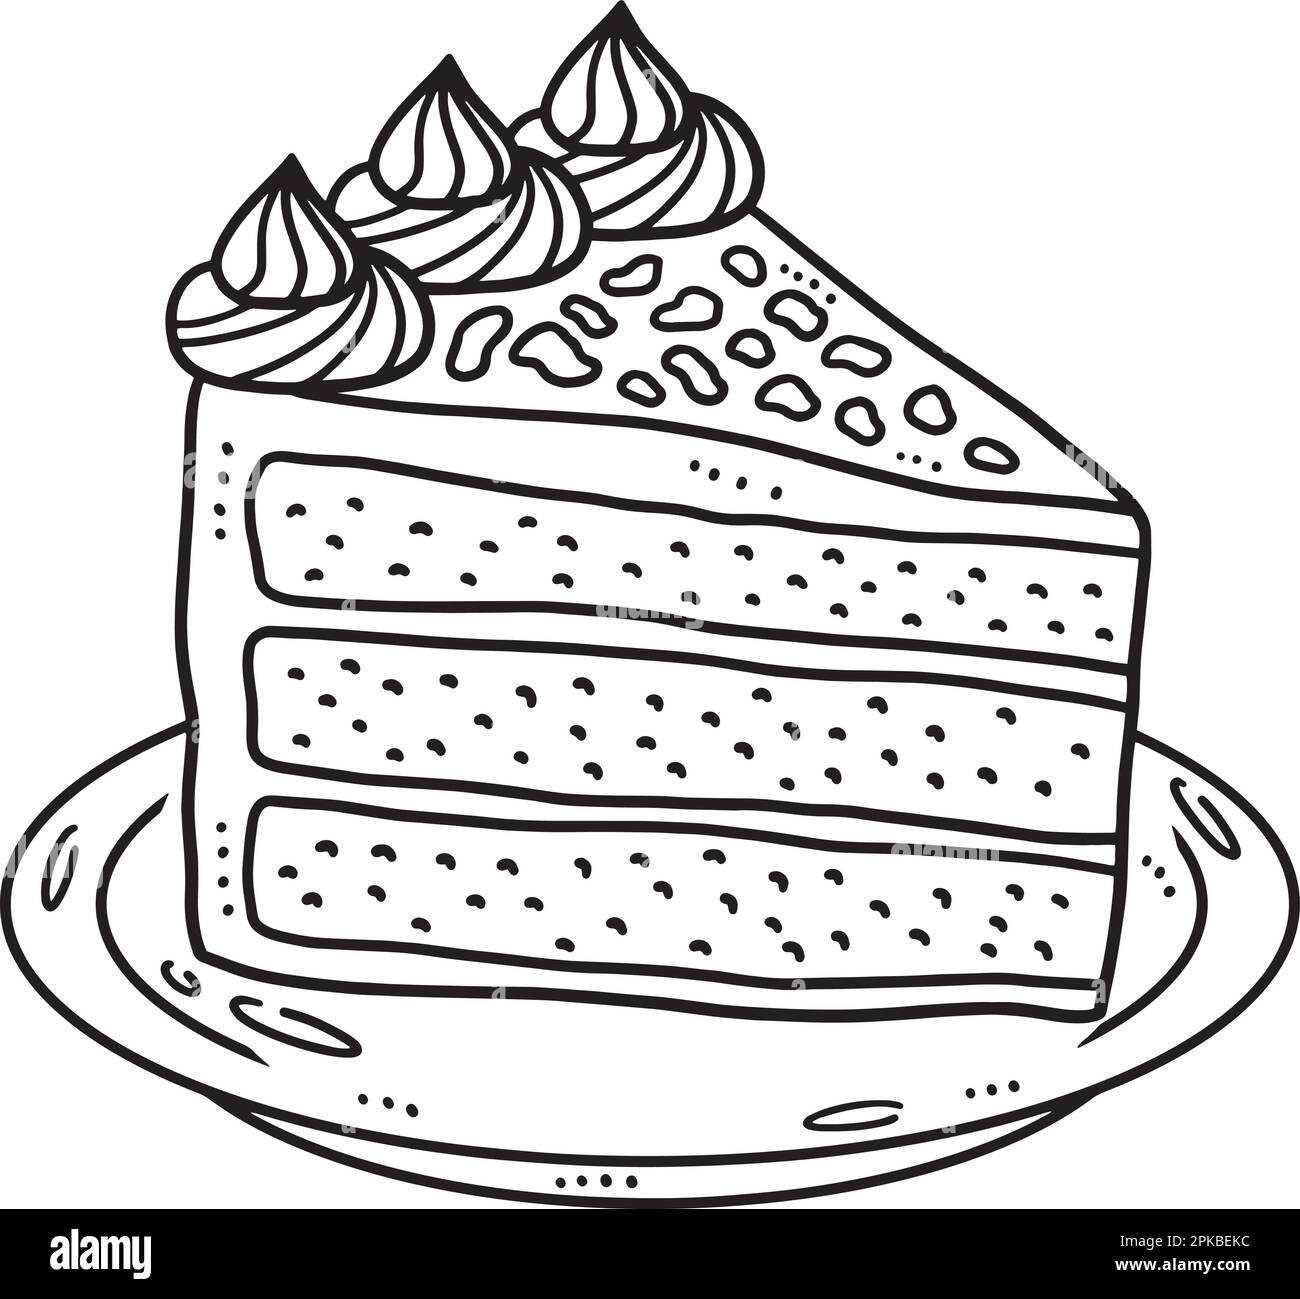 https://c8.alamy.com/compes/2pkbekc/slice-cake-pagina-para-colorear-aislada-para-ninos-2pkbekc.jpg